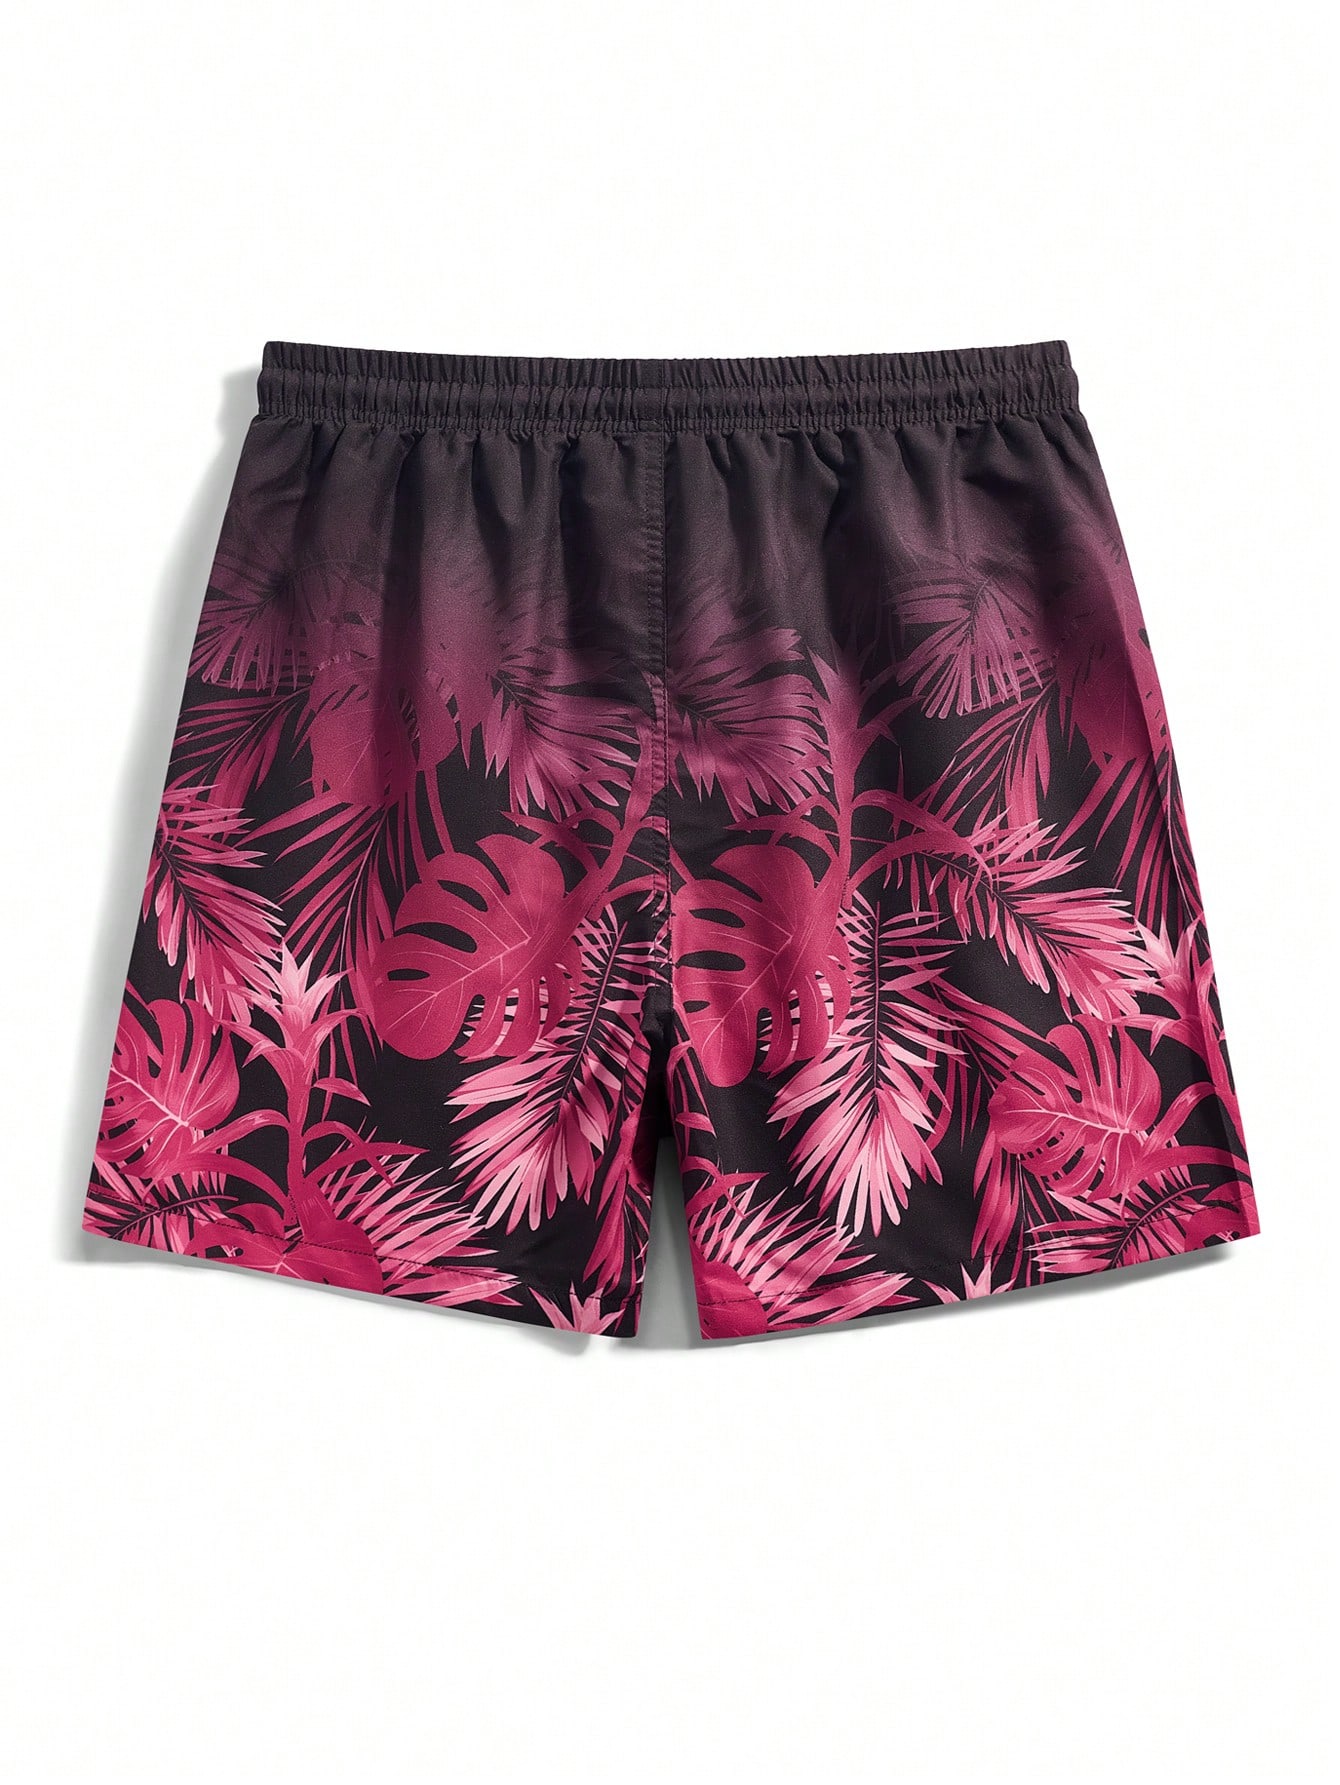 Мужские шорты Manfinity с принтом тропических растений для пляжной одежды, ярко-розовый